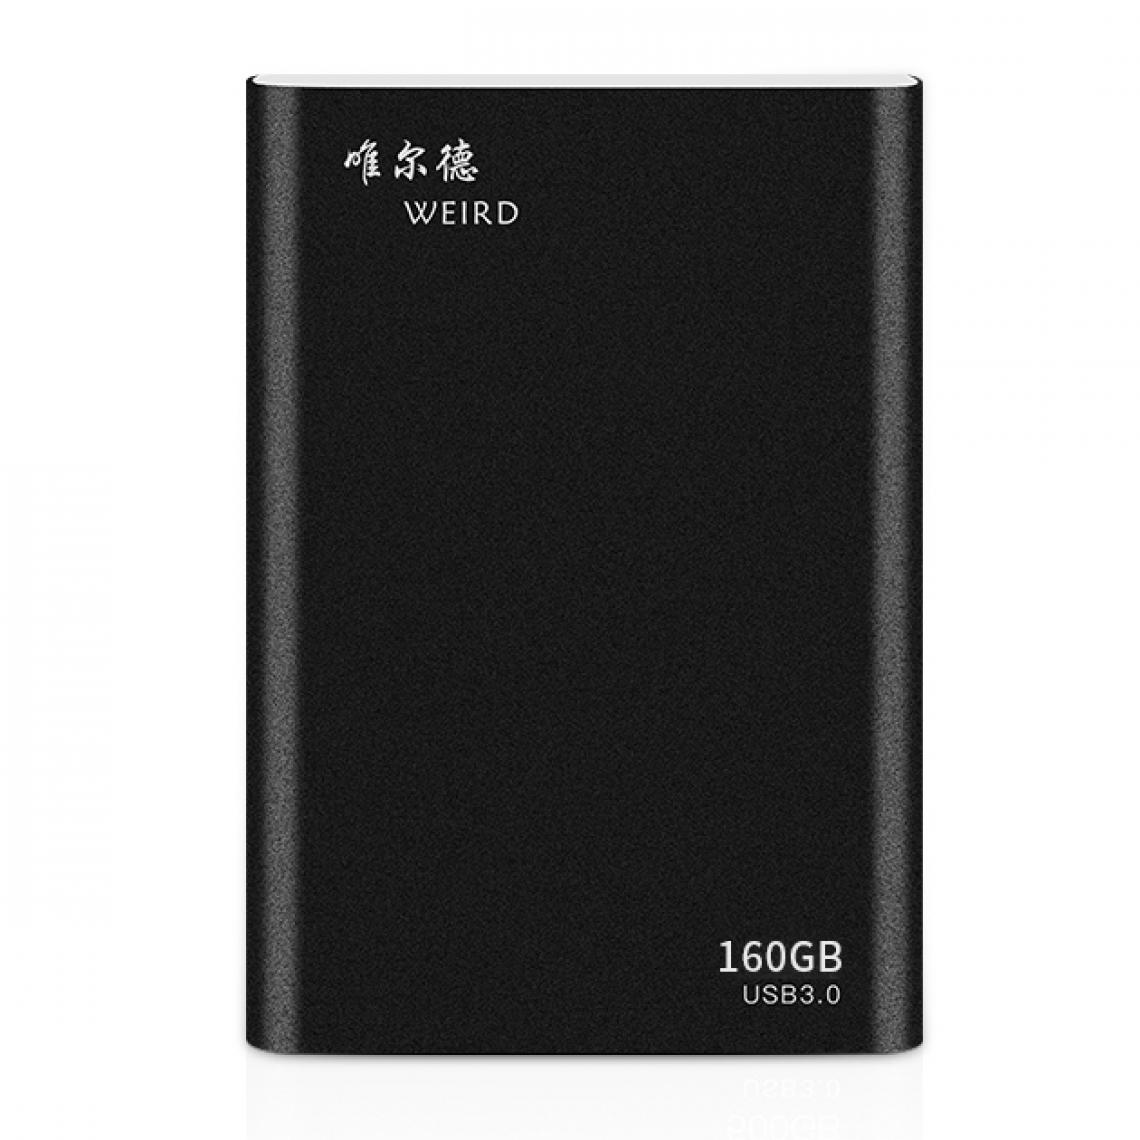 Wewoo - Disques SSD externes 160 Go 2,5 pouces USB 3.0 Transmission haute vitesse Shell en métal Disque dur portable à semi-conducteurs ultra-mince léger Noir - SSD Interne